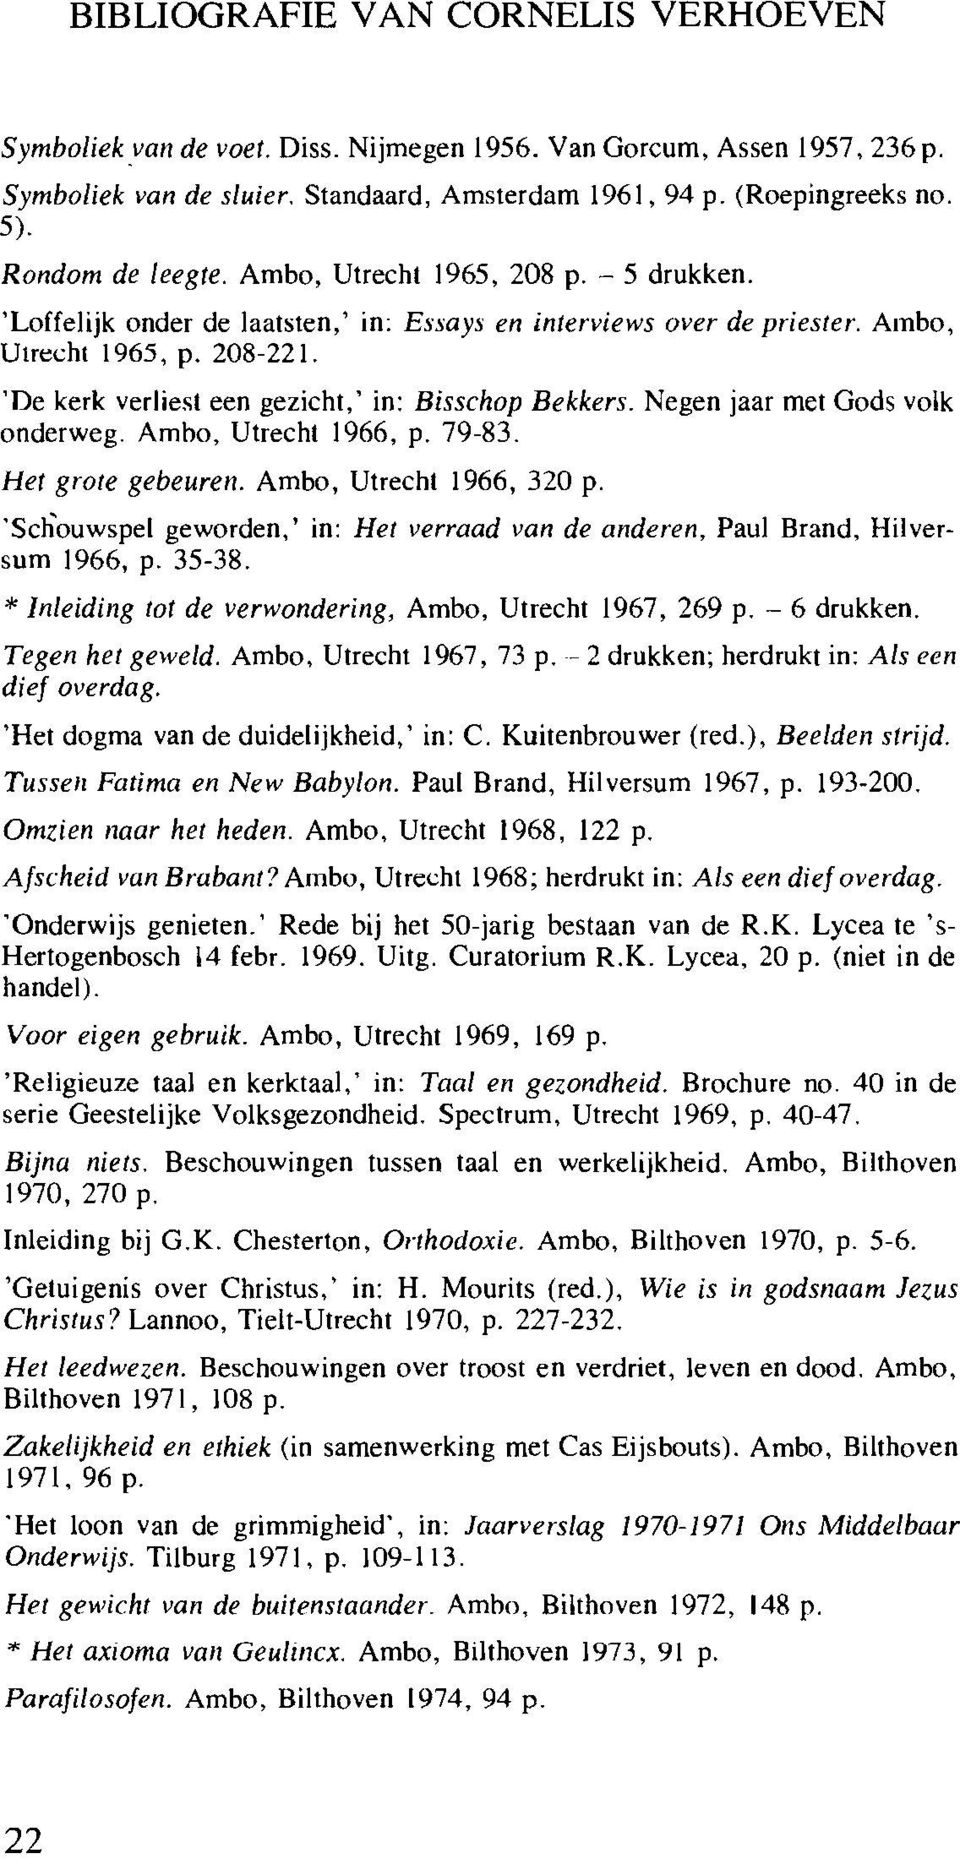 'De kerk verliest een gezicht,' in: Bisschop Bekkers. Negen jaar met Gods yolk onderweg. Ambo, Utrecht 1966, p. 79-83. Het grote gebeuren. Ambo, Utrecht 1966, 320 p.